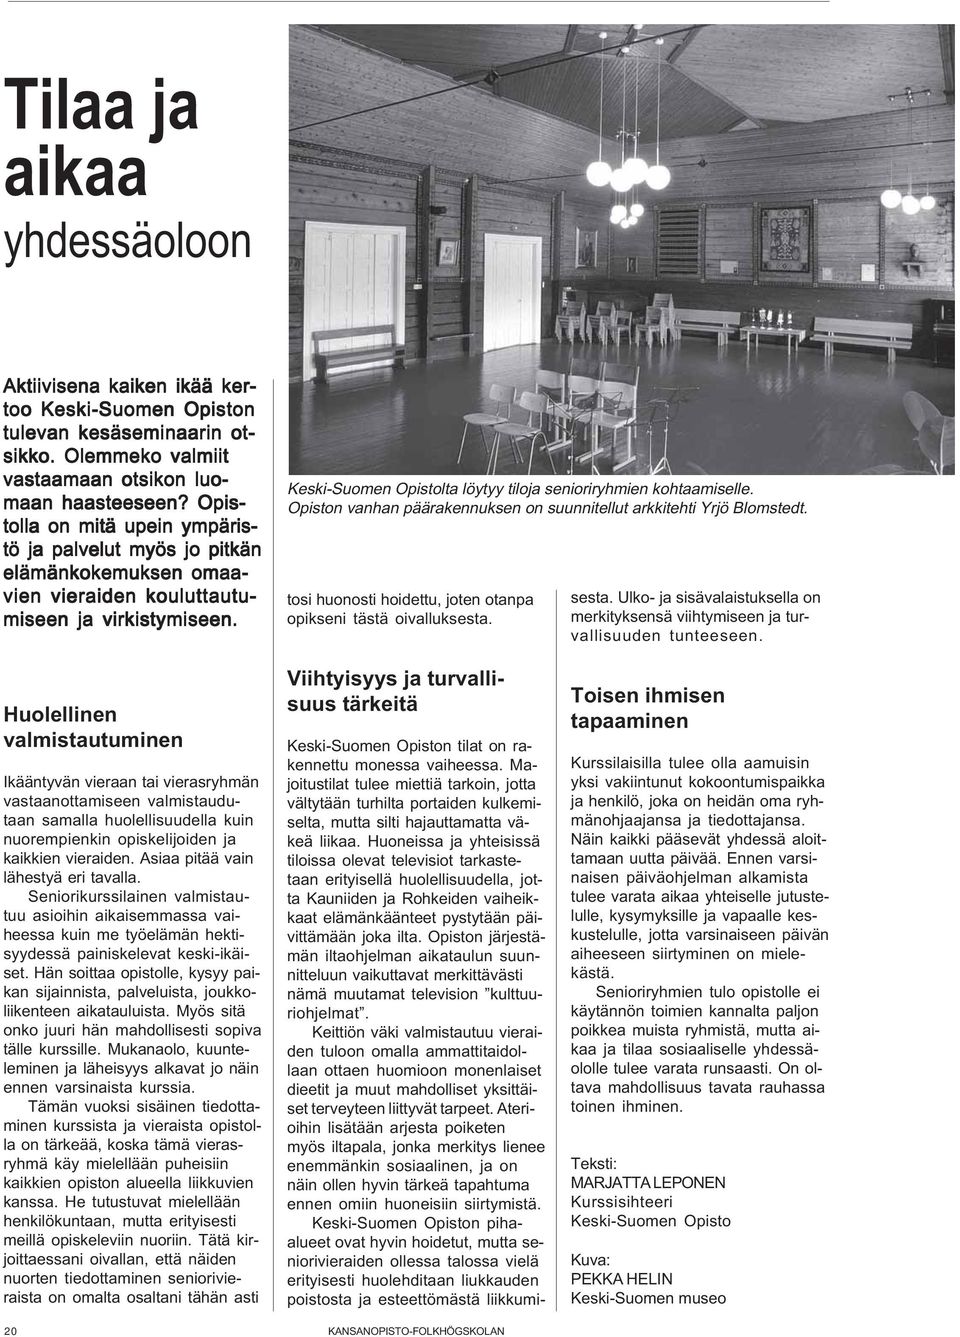 Keski-Suomen Opistolta löytyy tiloja senioriryhmien kohtaamiselle. Opiston vanhan päärakennuksen on suunnitellut arkkitehti Yrjö Blomstedt.